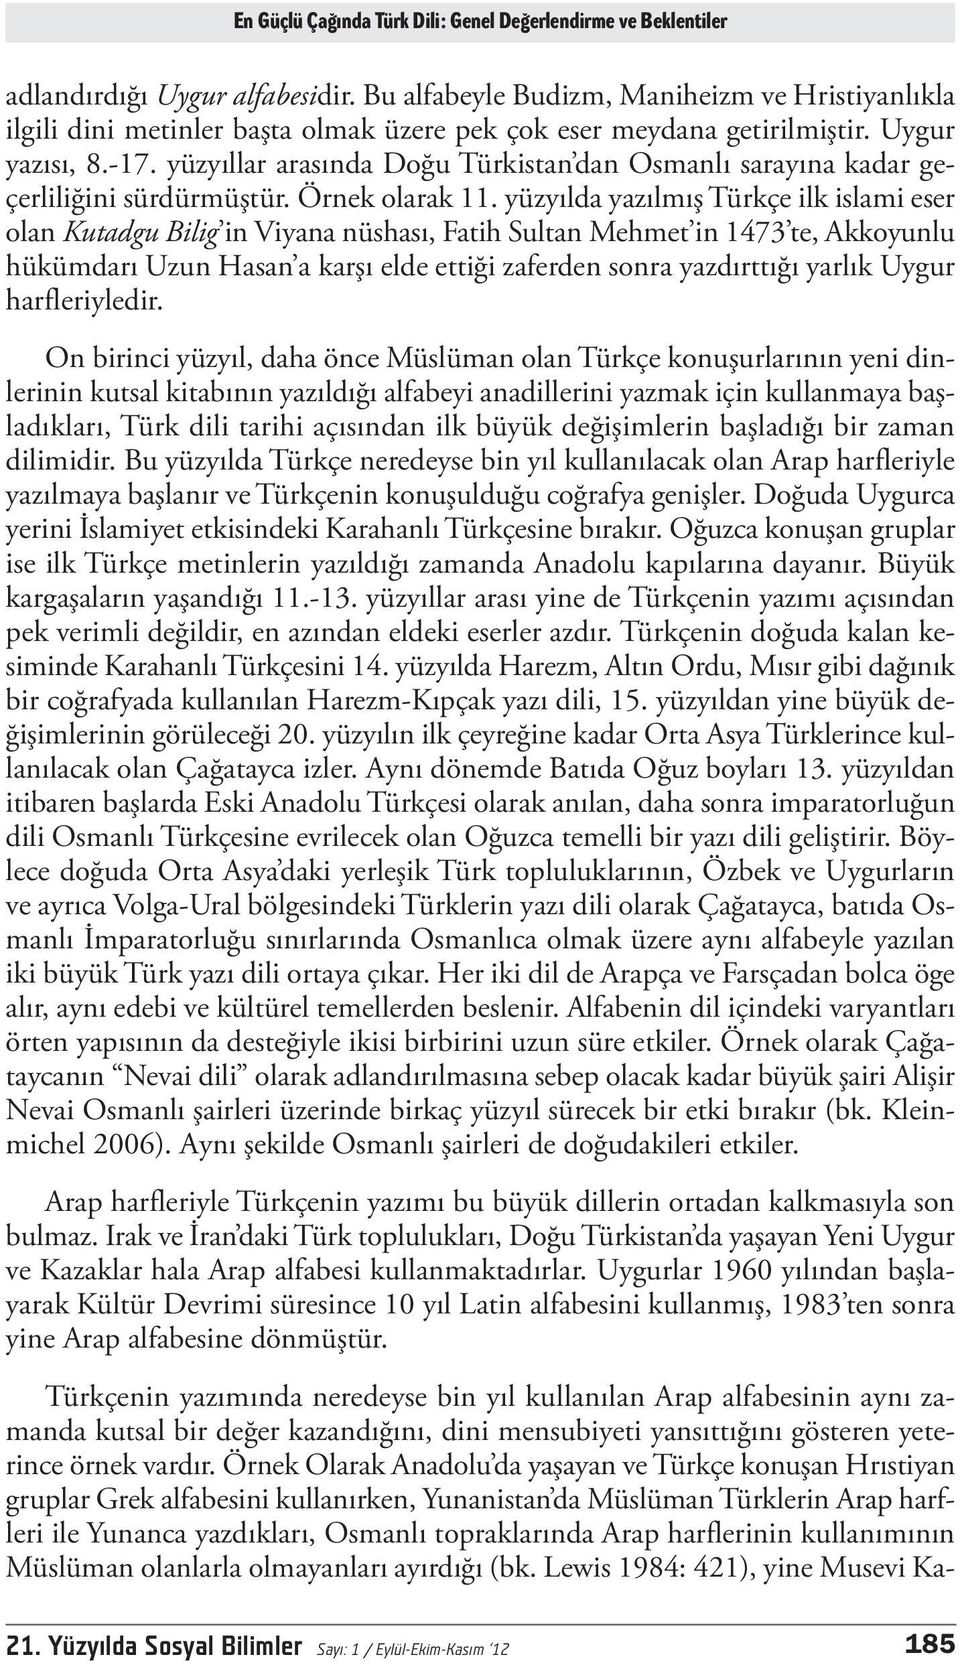 yüzyıllar arasında Doğu Türkistan dan Osmanlı sarayına kadar geçerliliğini sürdürmüştür. Örnek olarak 11.